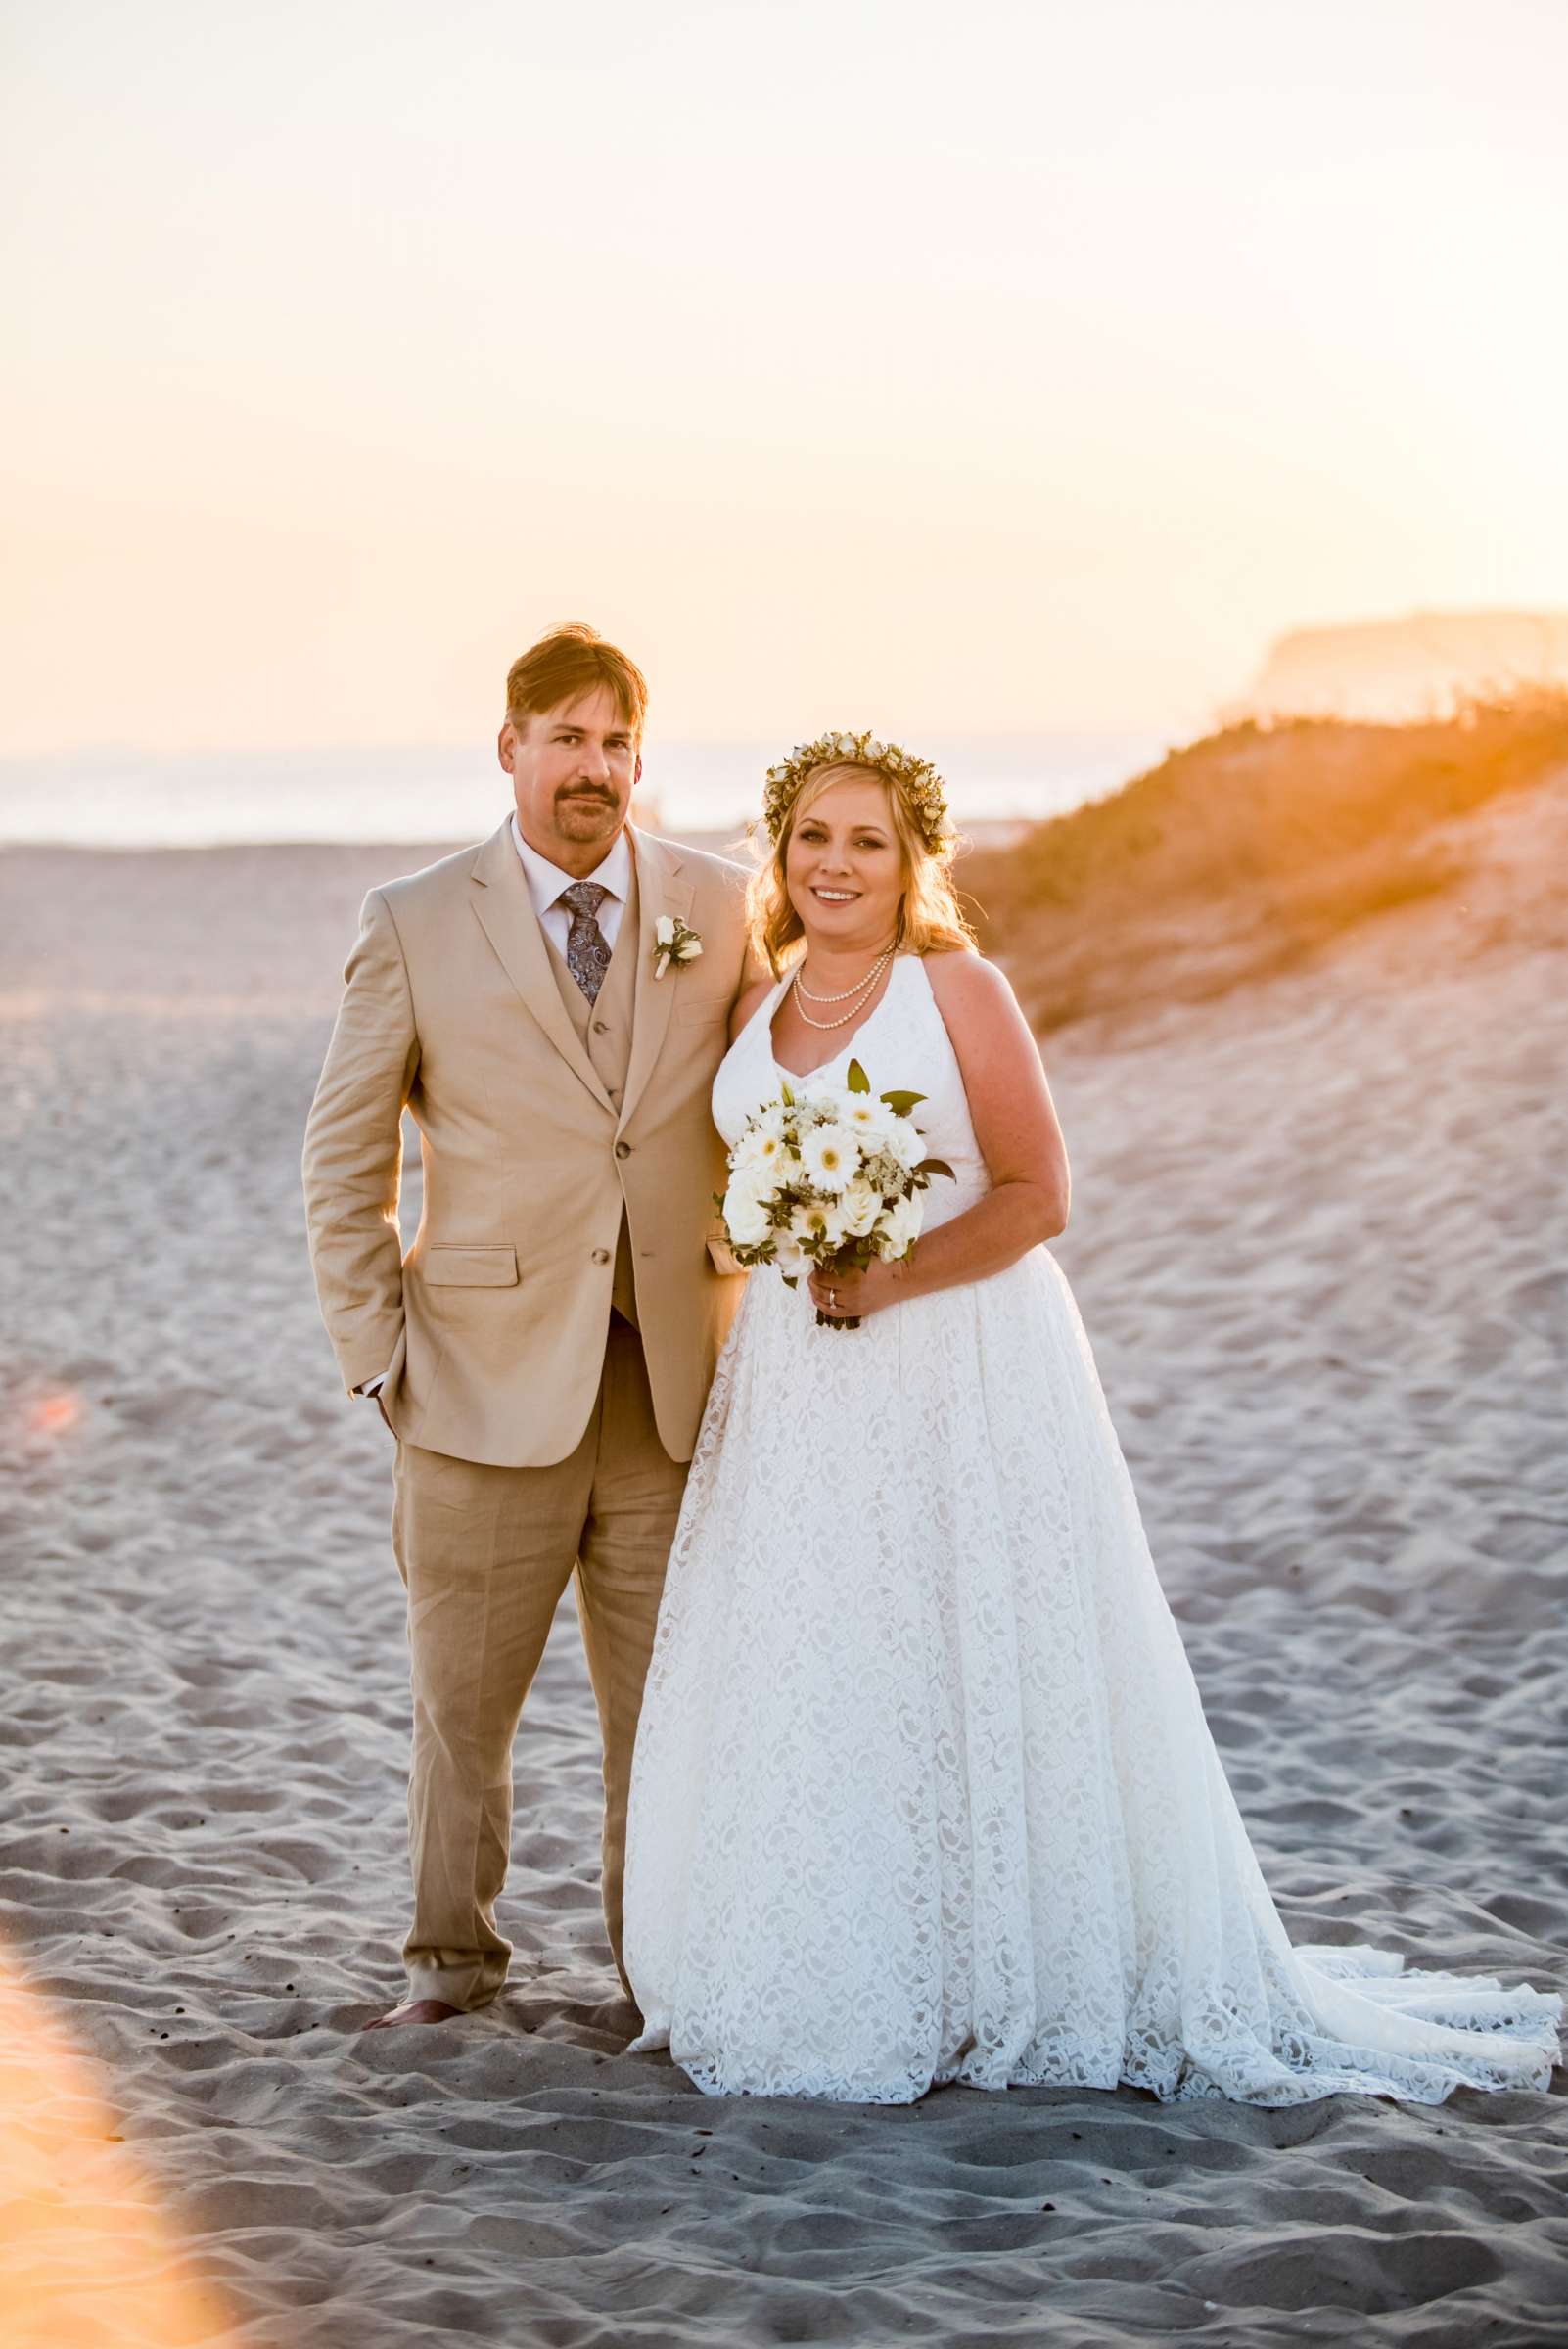 Hotel Del Coronado Wedding, Danielle and Glenn Wedding Photo #44 by True Photography